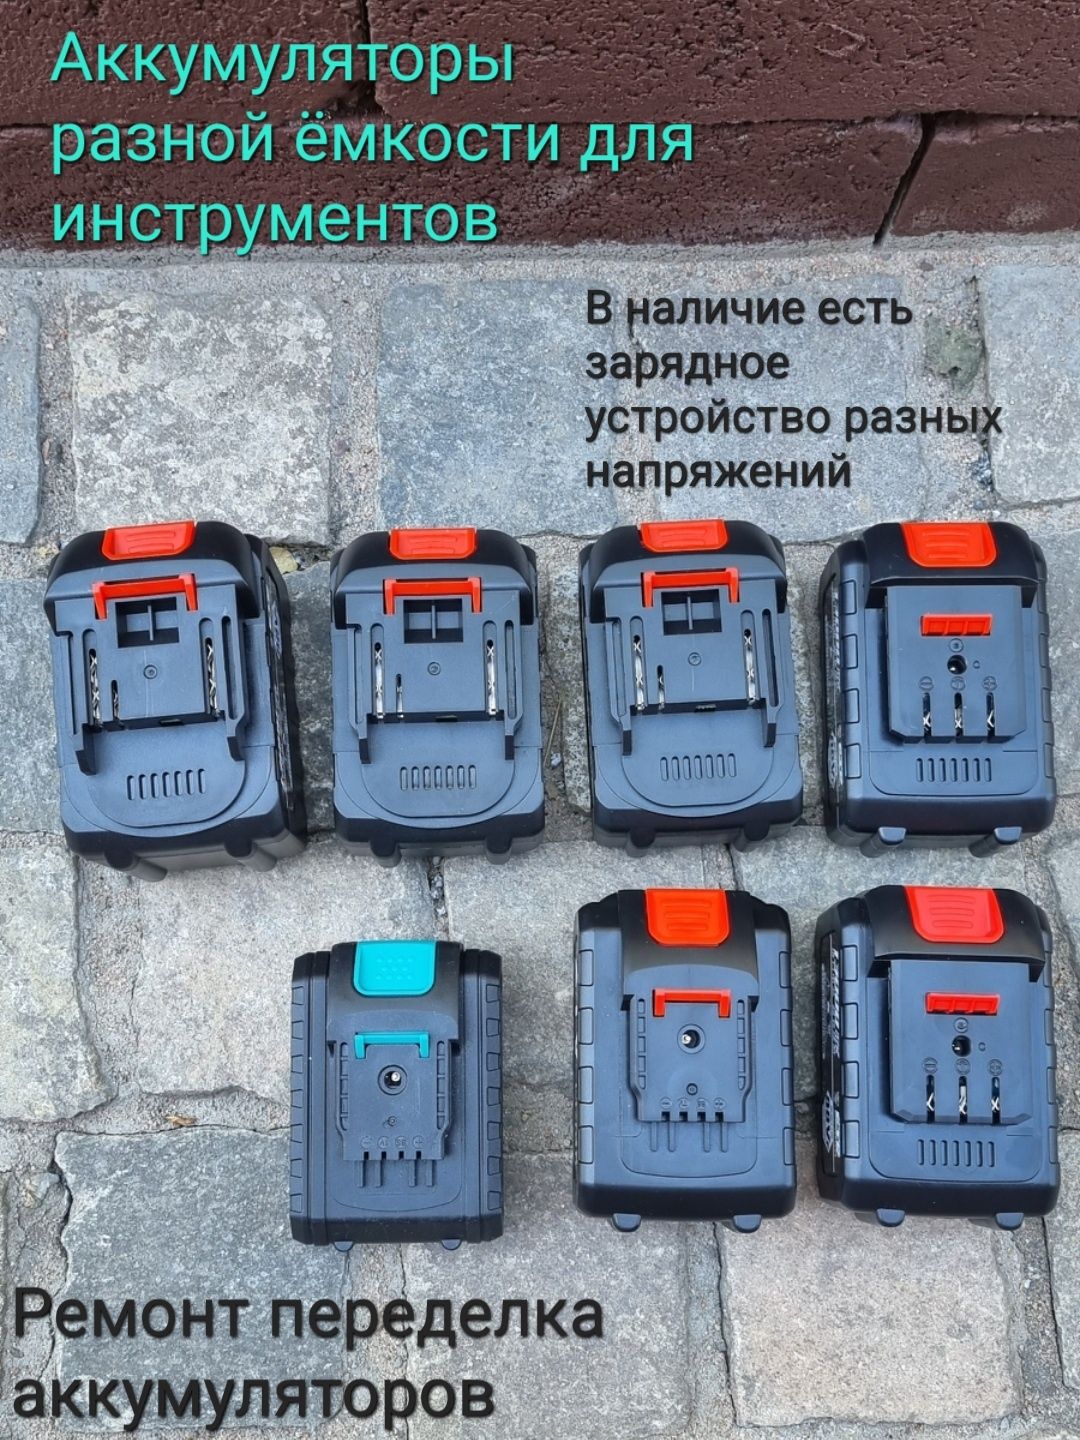 Аккумуляторные инструменты: 11 000 т - Шуруповерты Алматы на Olx